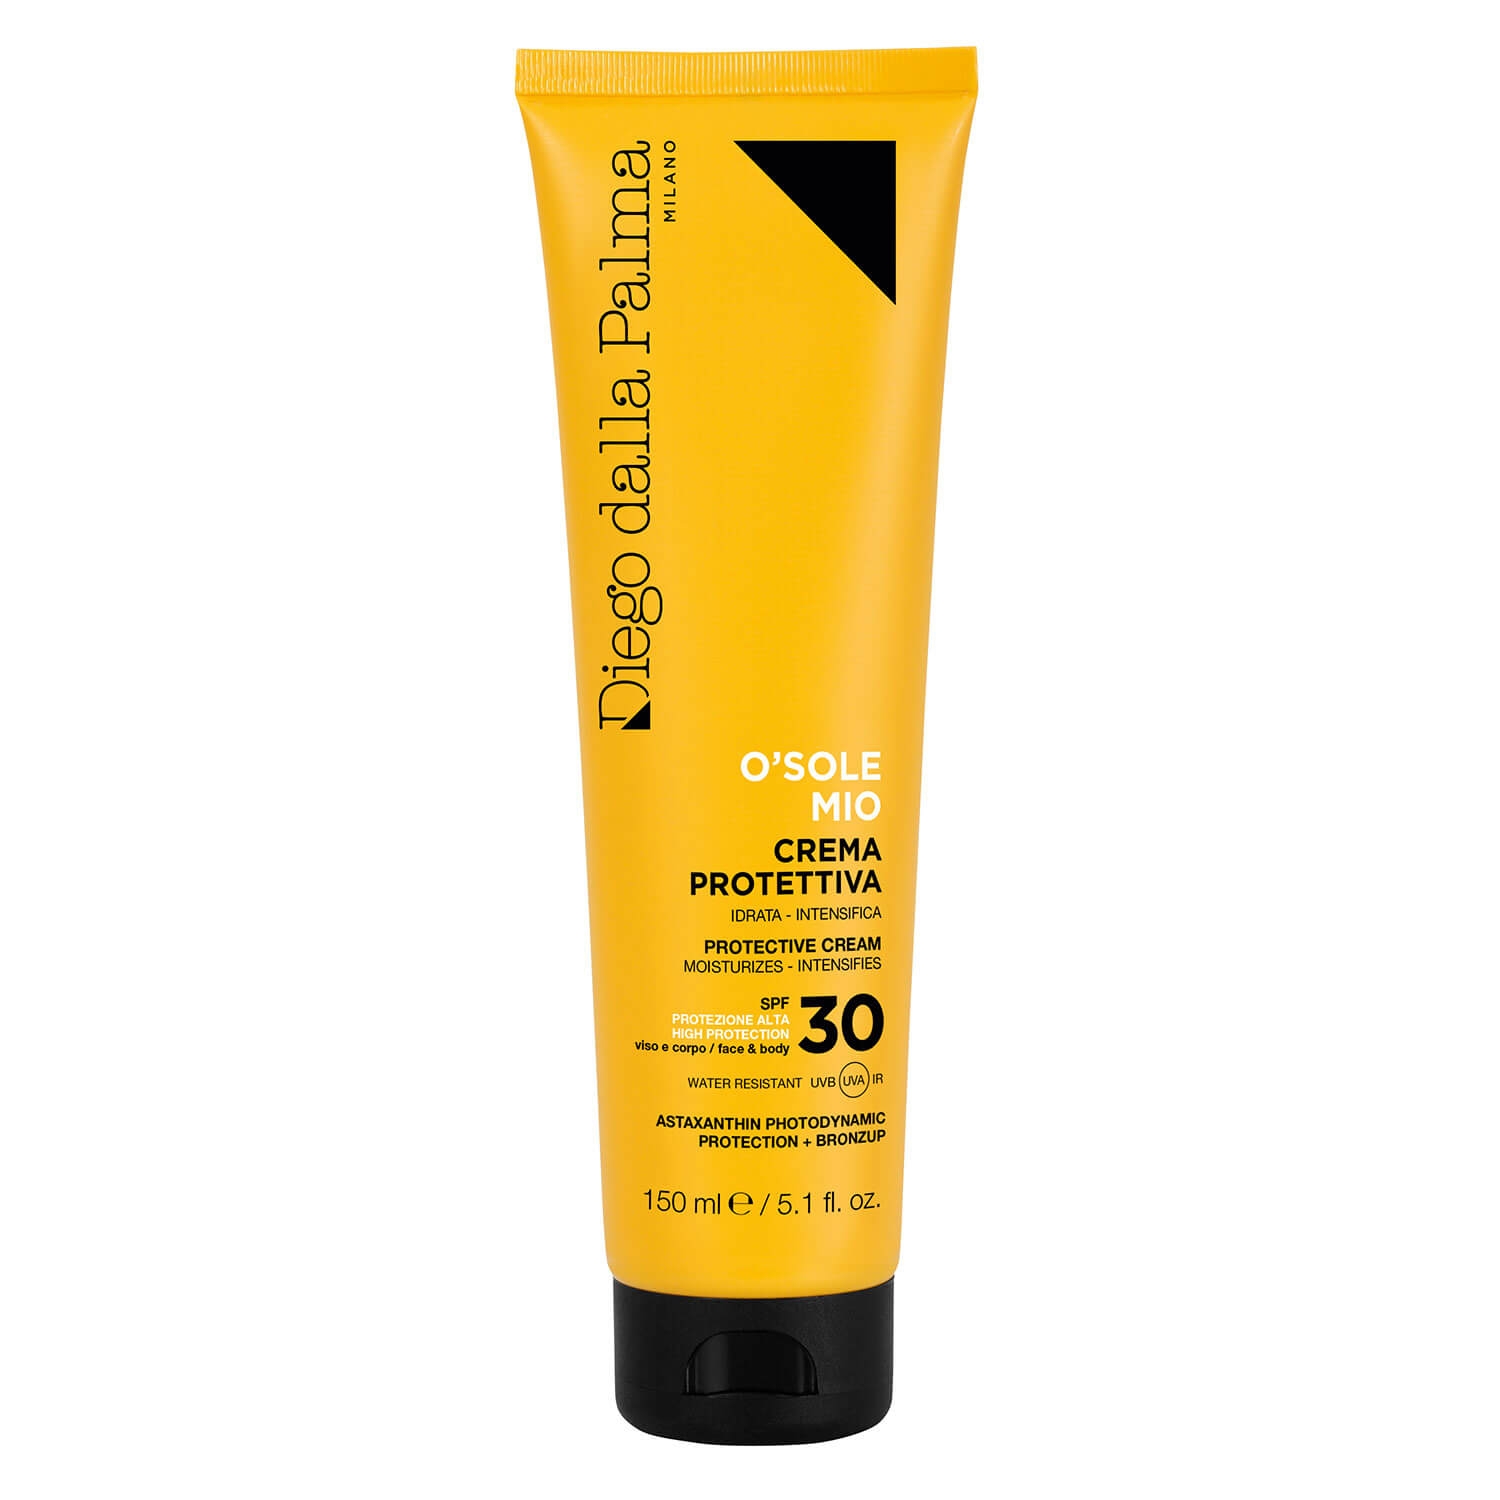 Produktbild von Diego dalla Palma Sun - O'SOLE MIO Protective Face & Body Cream SPF30